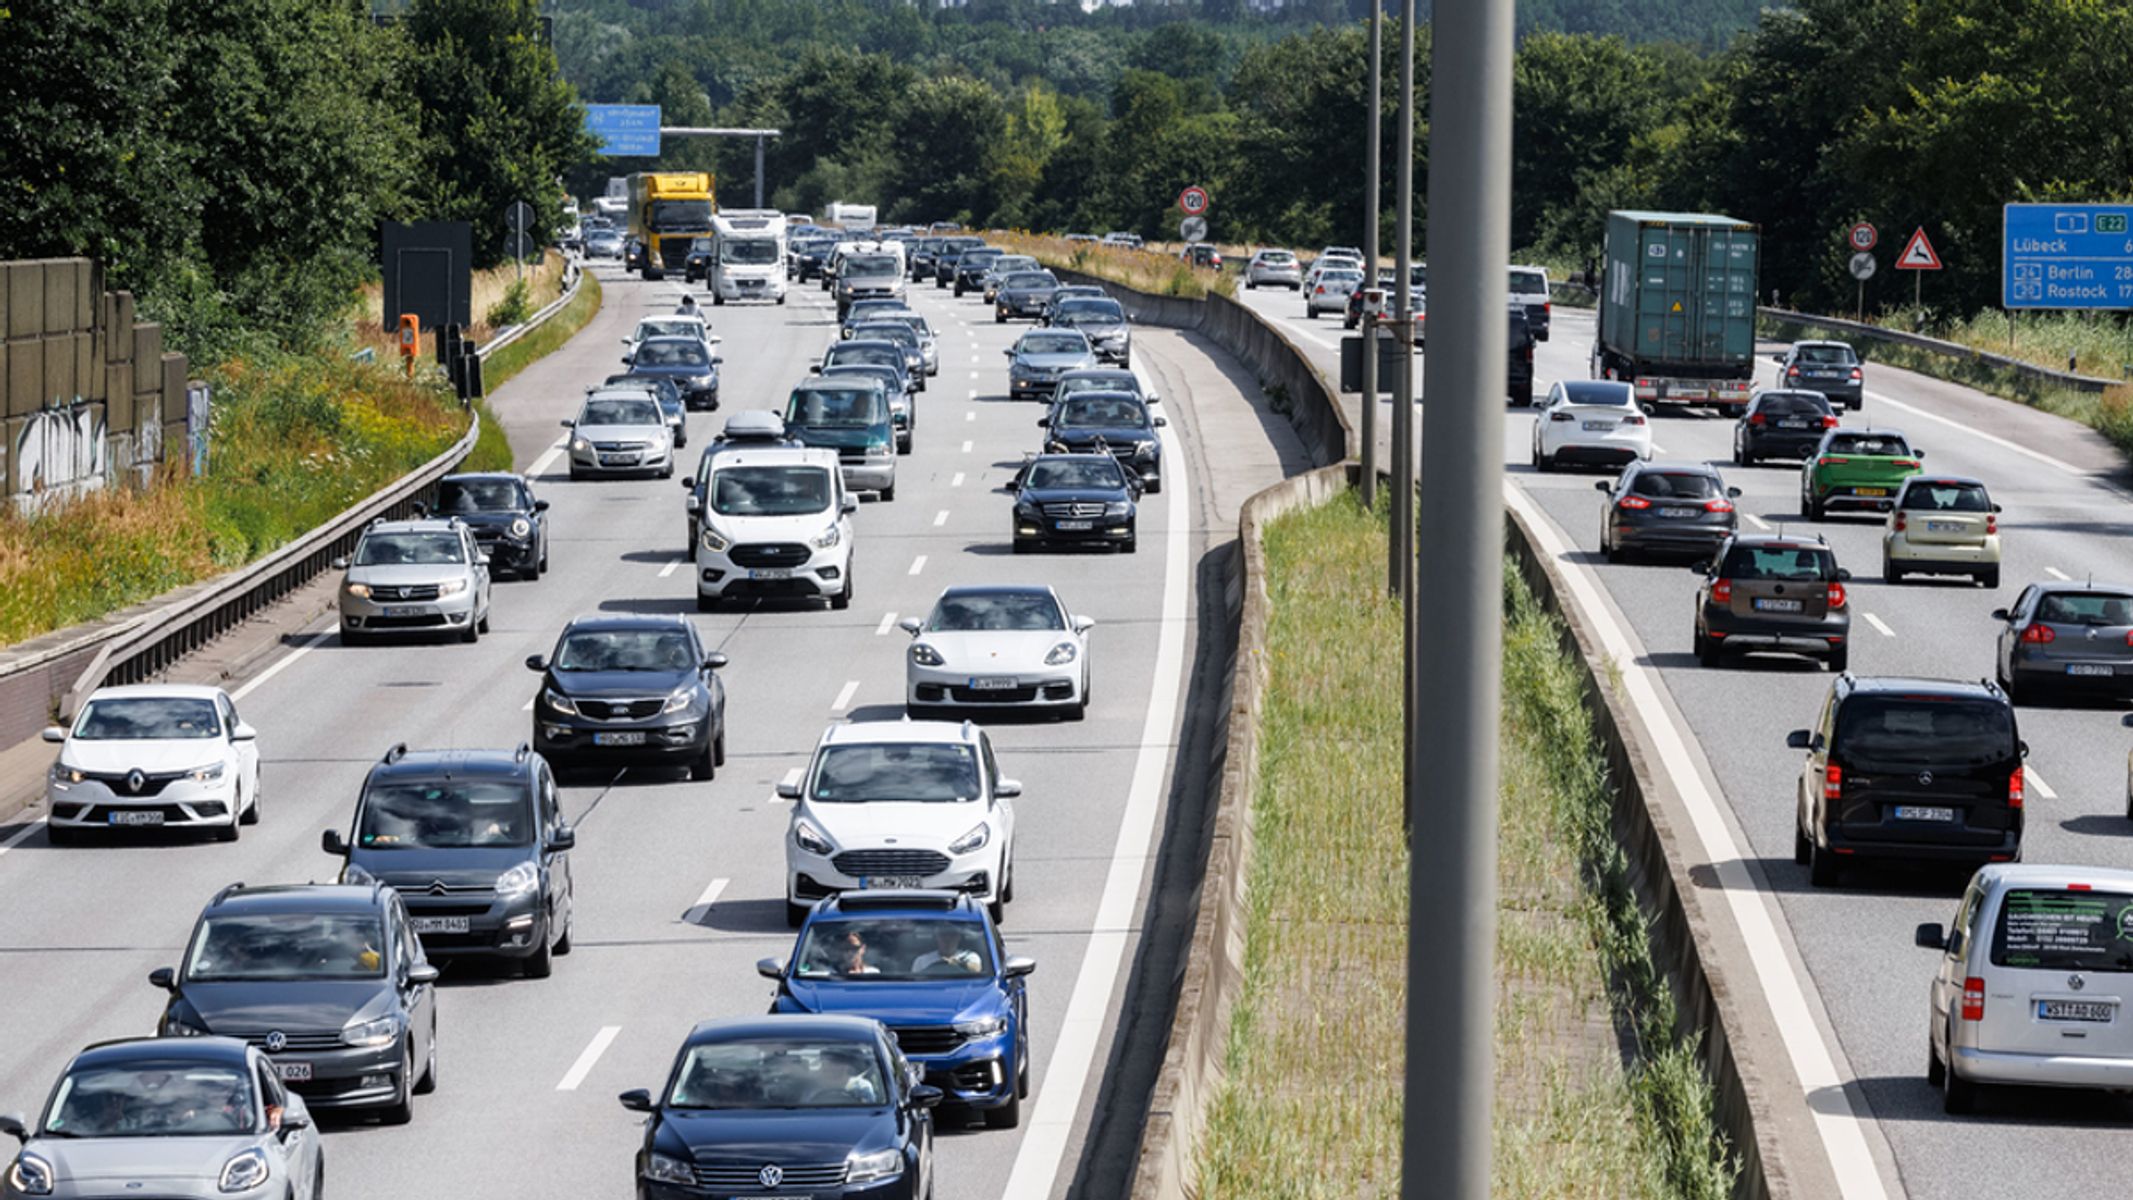 ADAC gibt Tipps zum Fahren und Parken bei Sommerhitze - Osthessen